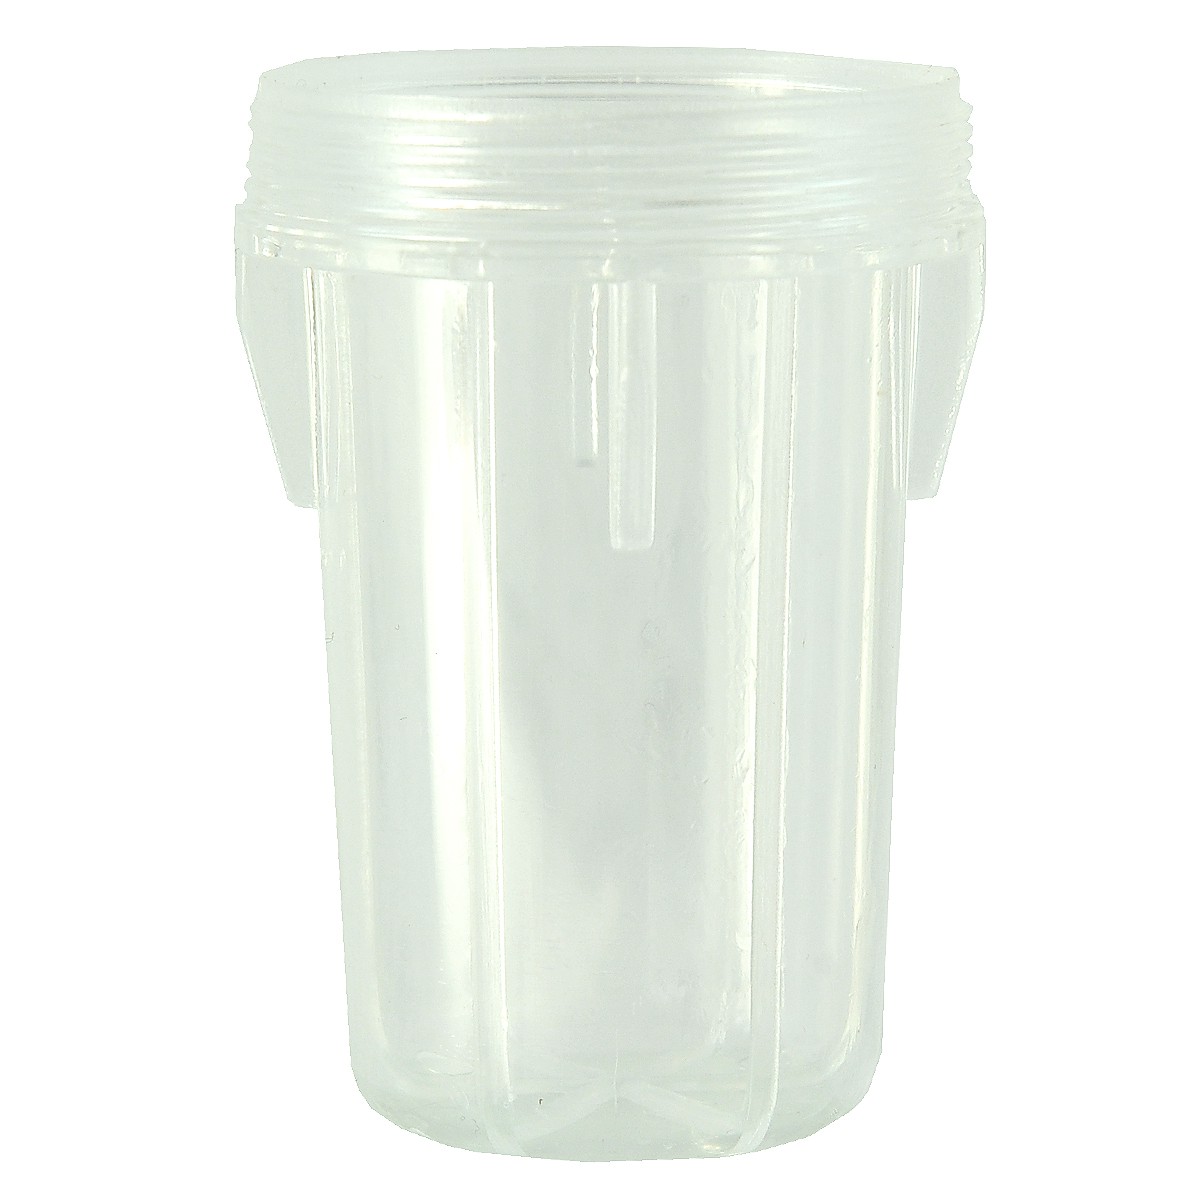 Fuel filter cup / Kubota B2410 / Kubota B2440 / 5-01-204-06